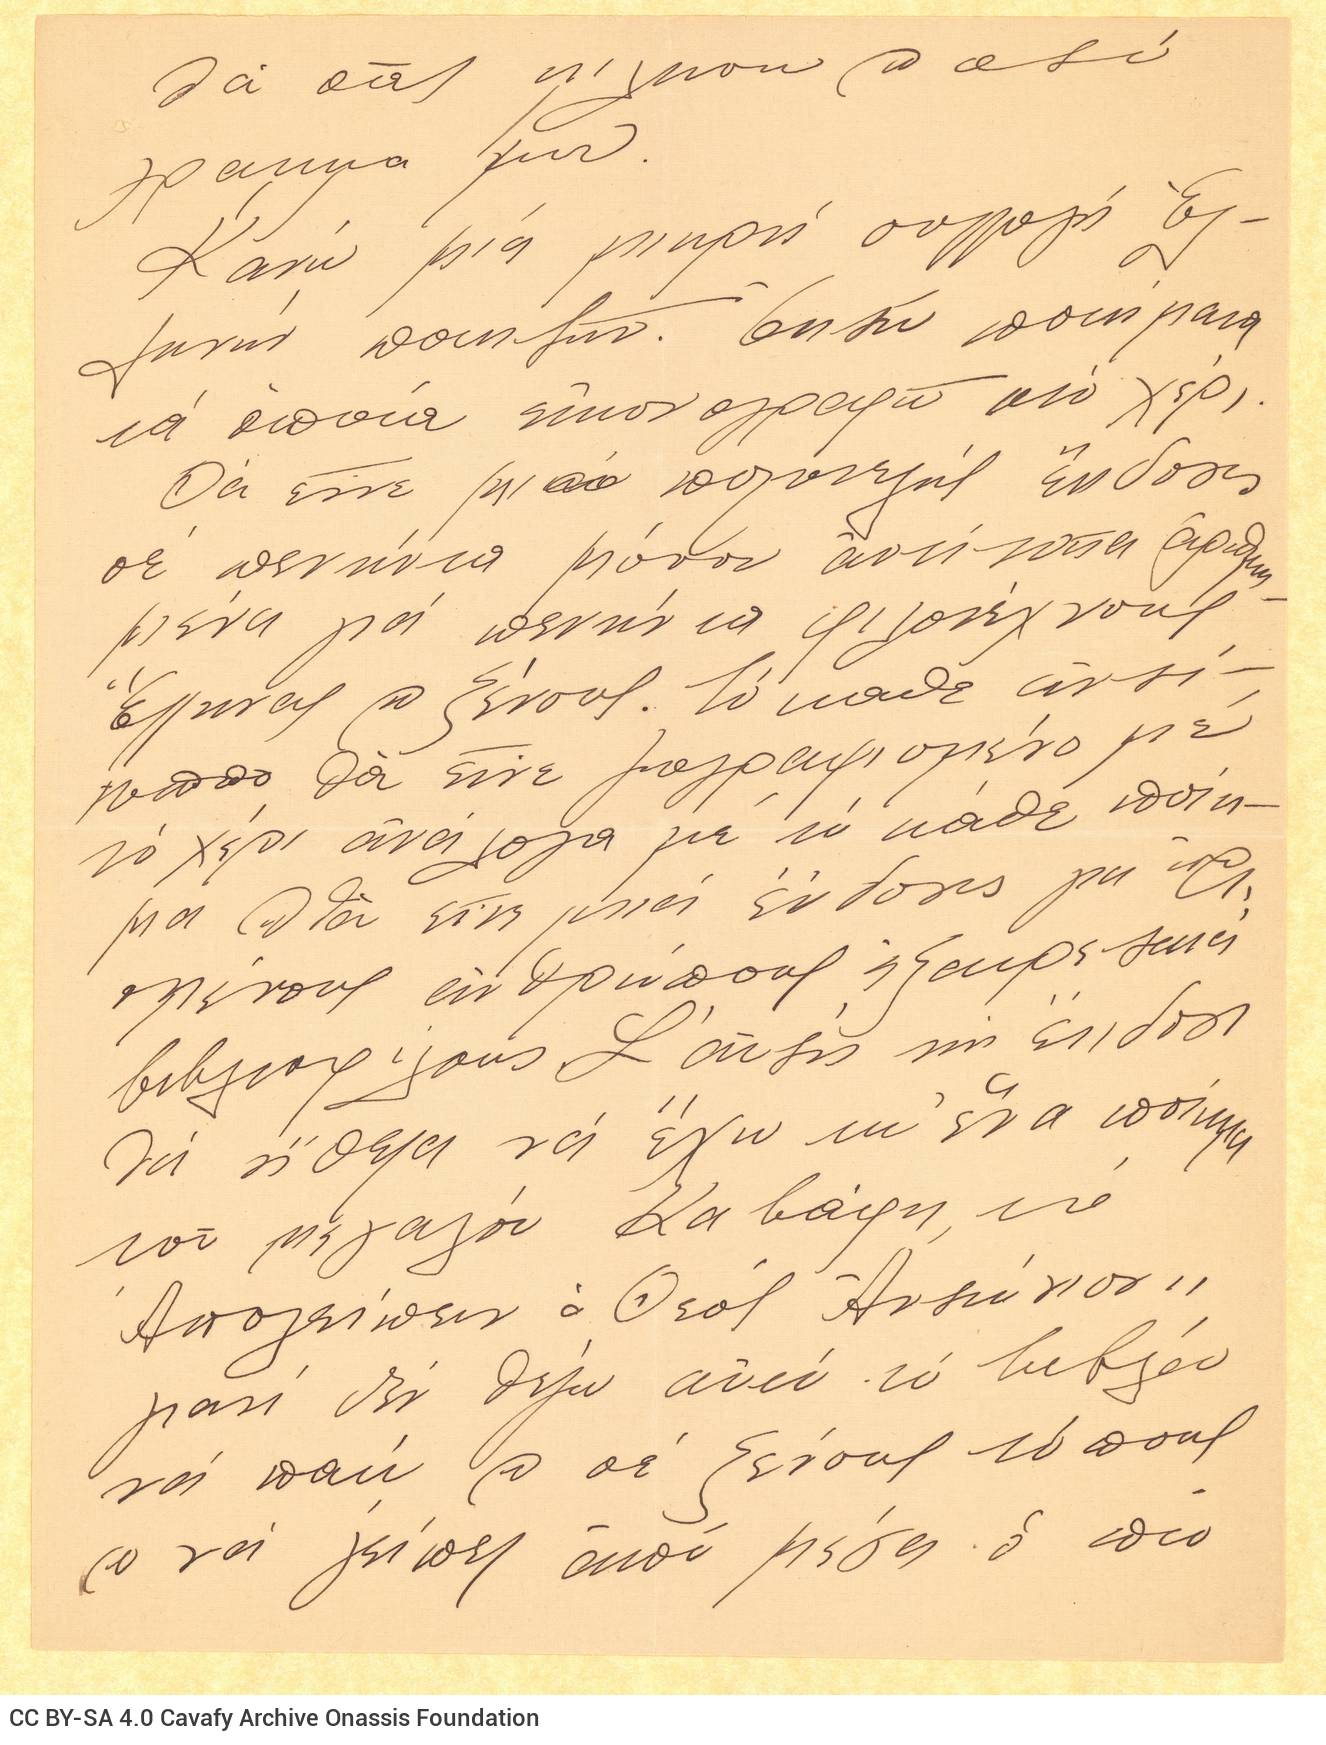 Χειρόγραφη επιστολή της Σελέστ Πολυχρονιάδου προς τη Ρίκα Σεγκοπού�